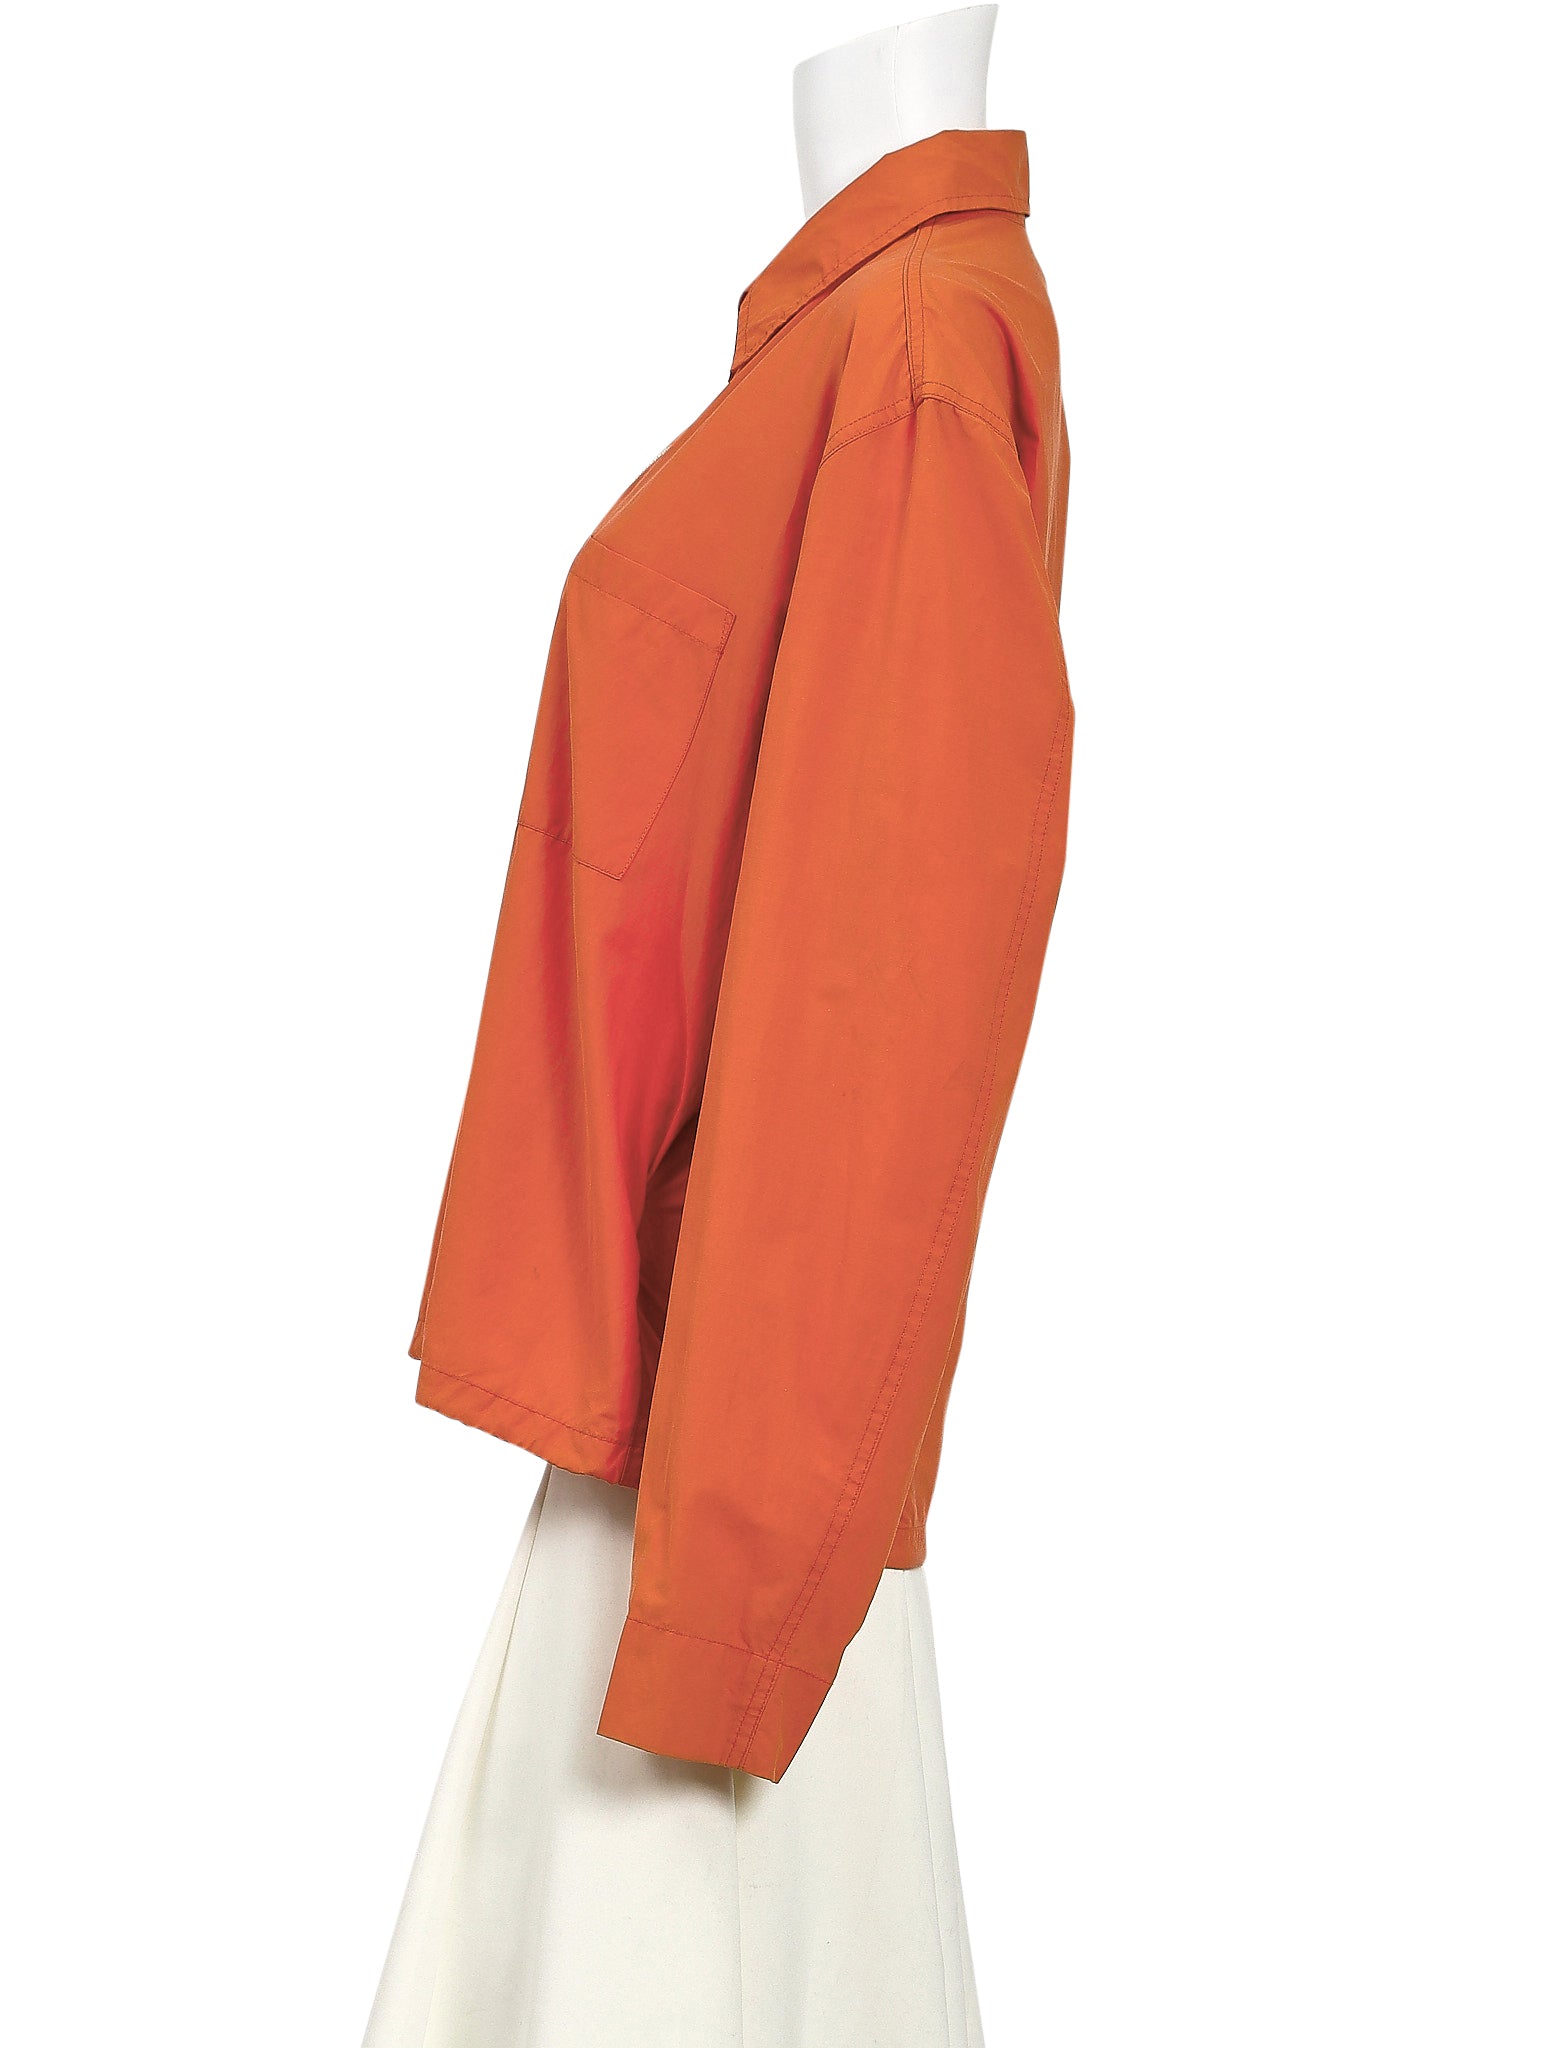 Helmut Lang SS00 Safety Orange Bondage Jacket – The Turn